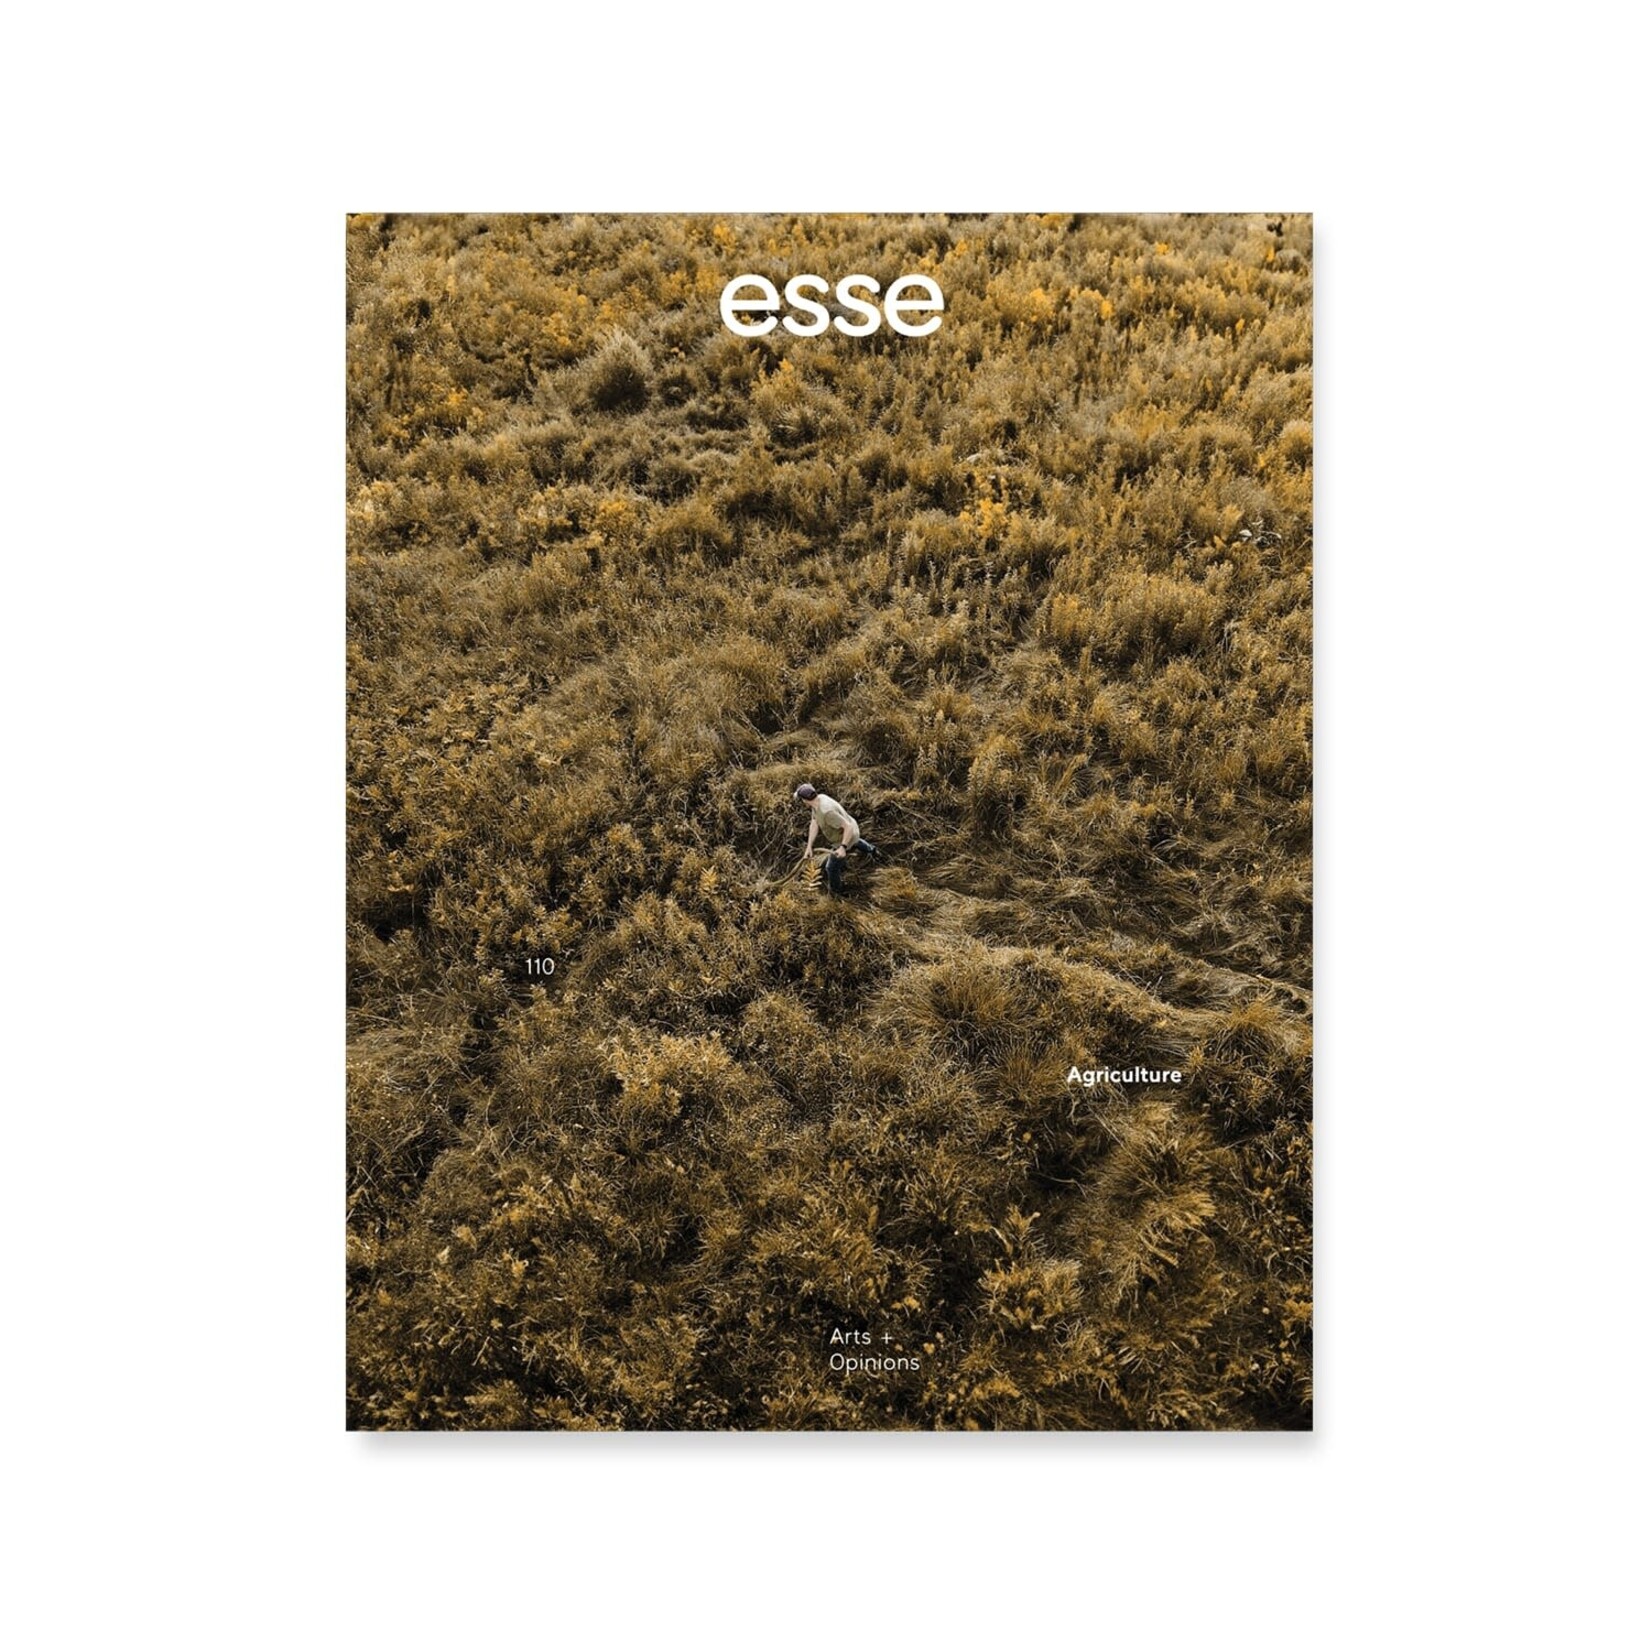 esse Magazine - 110 (Agriculture)